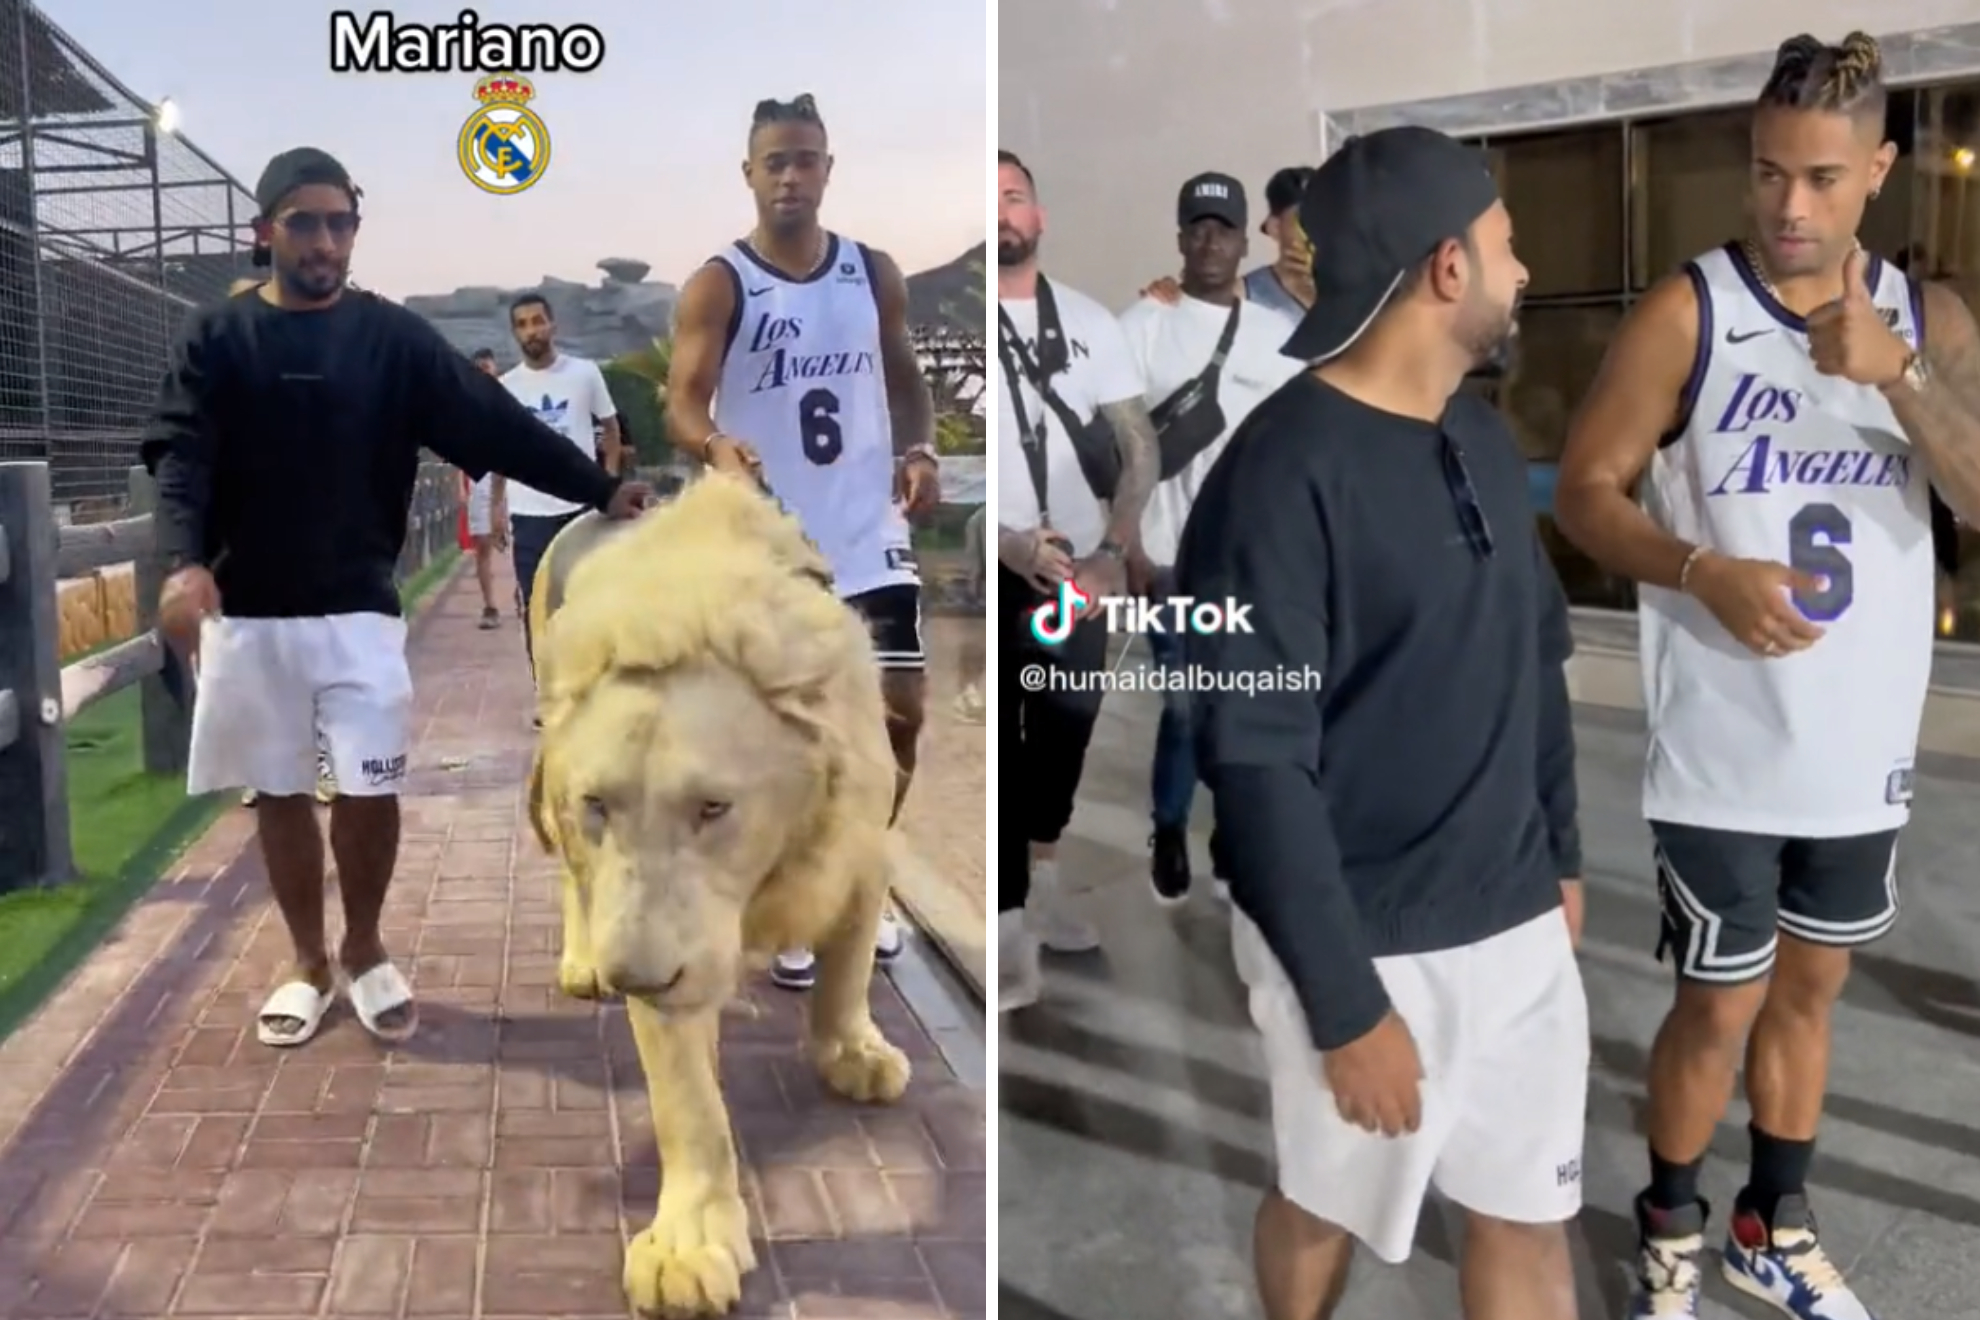 Las vacaciones de Mariano paseando un león en Dubái